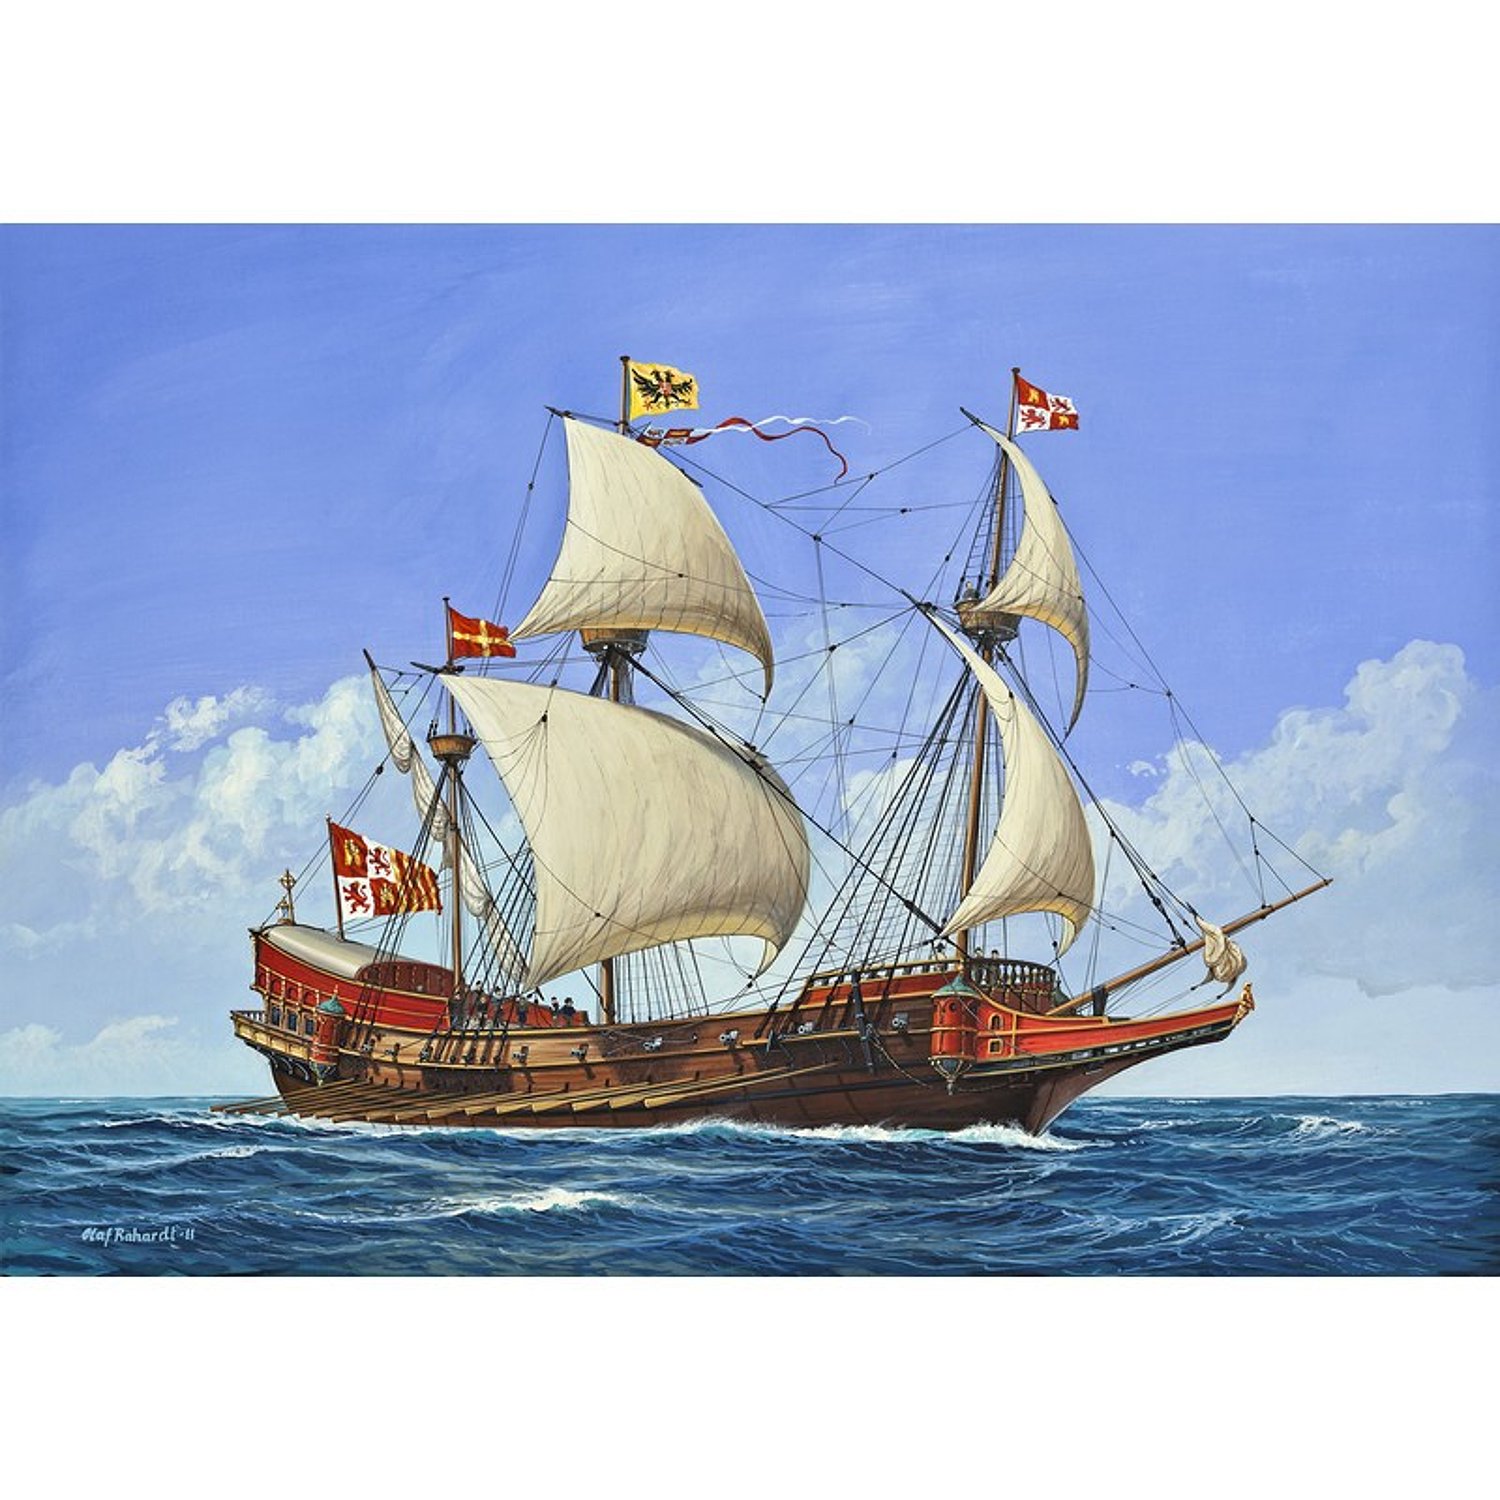 Корабль Revell парусный испанский галеон